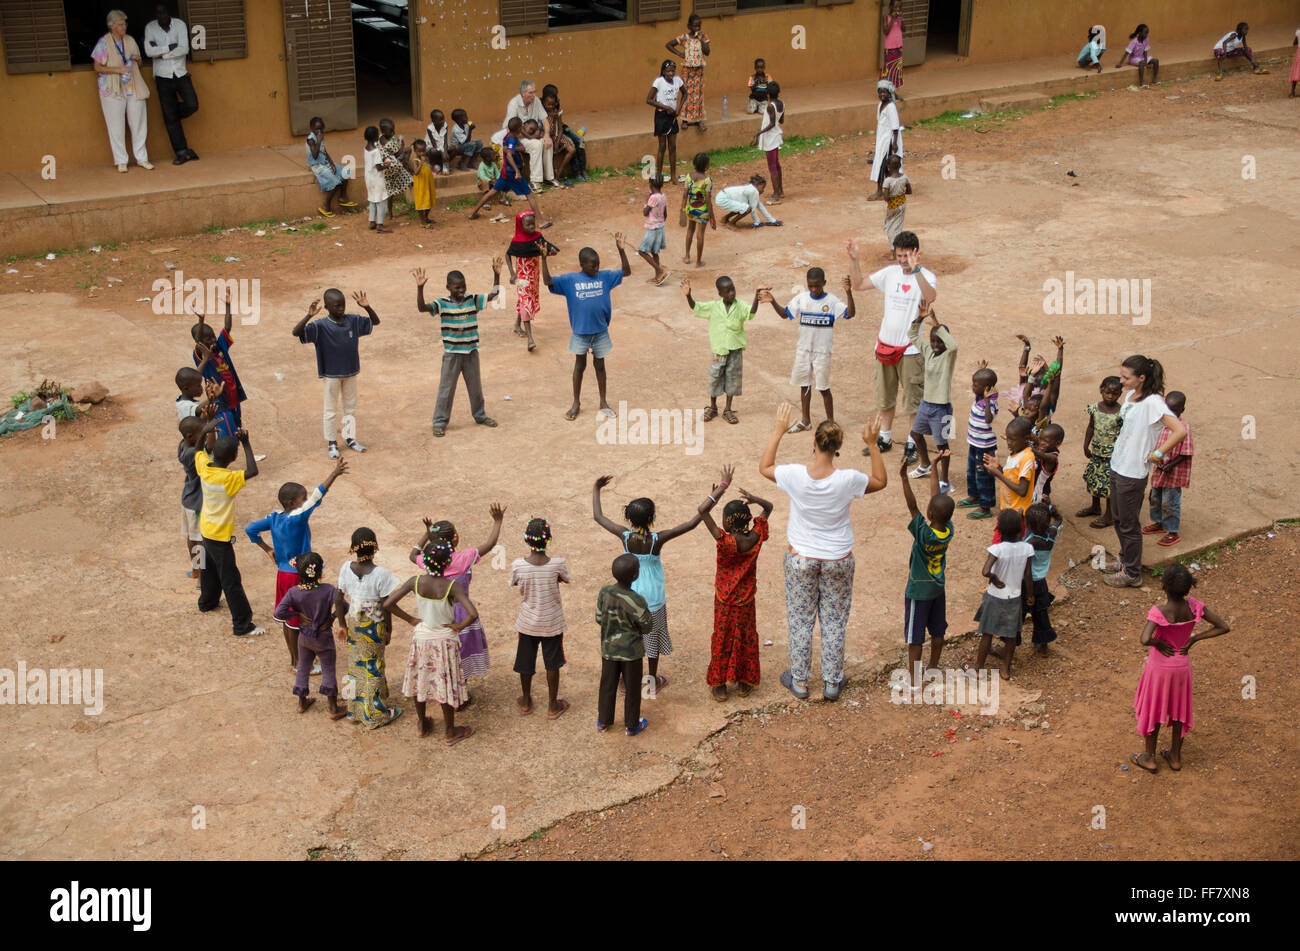 Mali, Afrika - Gruppe von schwarzen Kindern Spaß in einem Kreis in Afrika Stockfoto